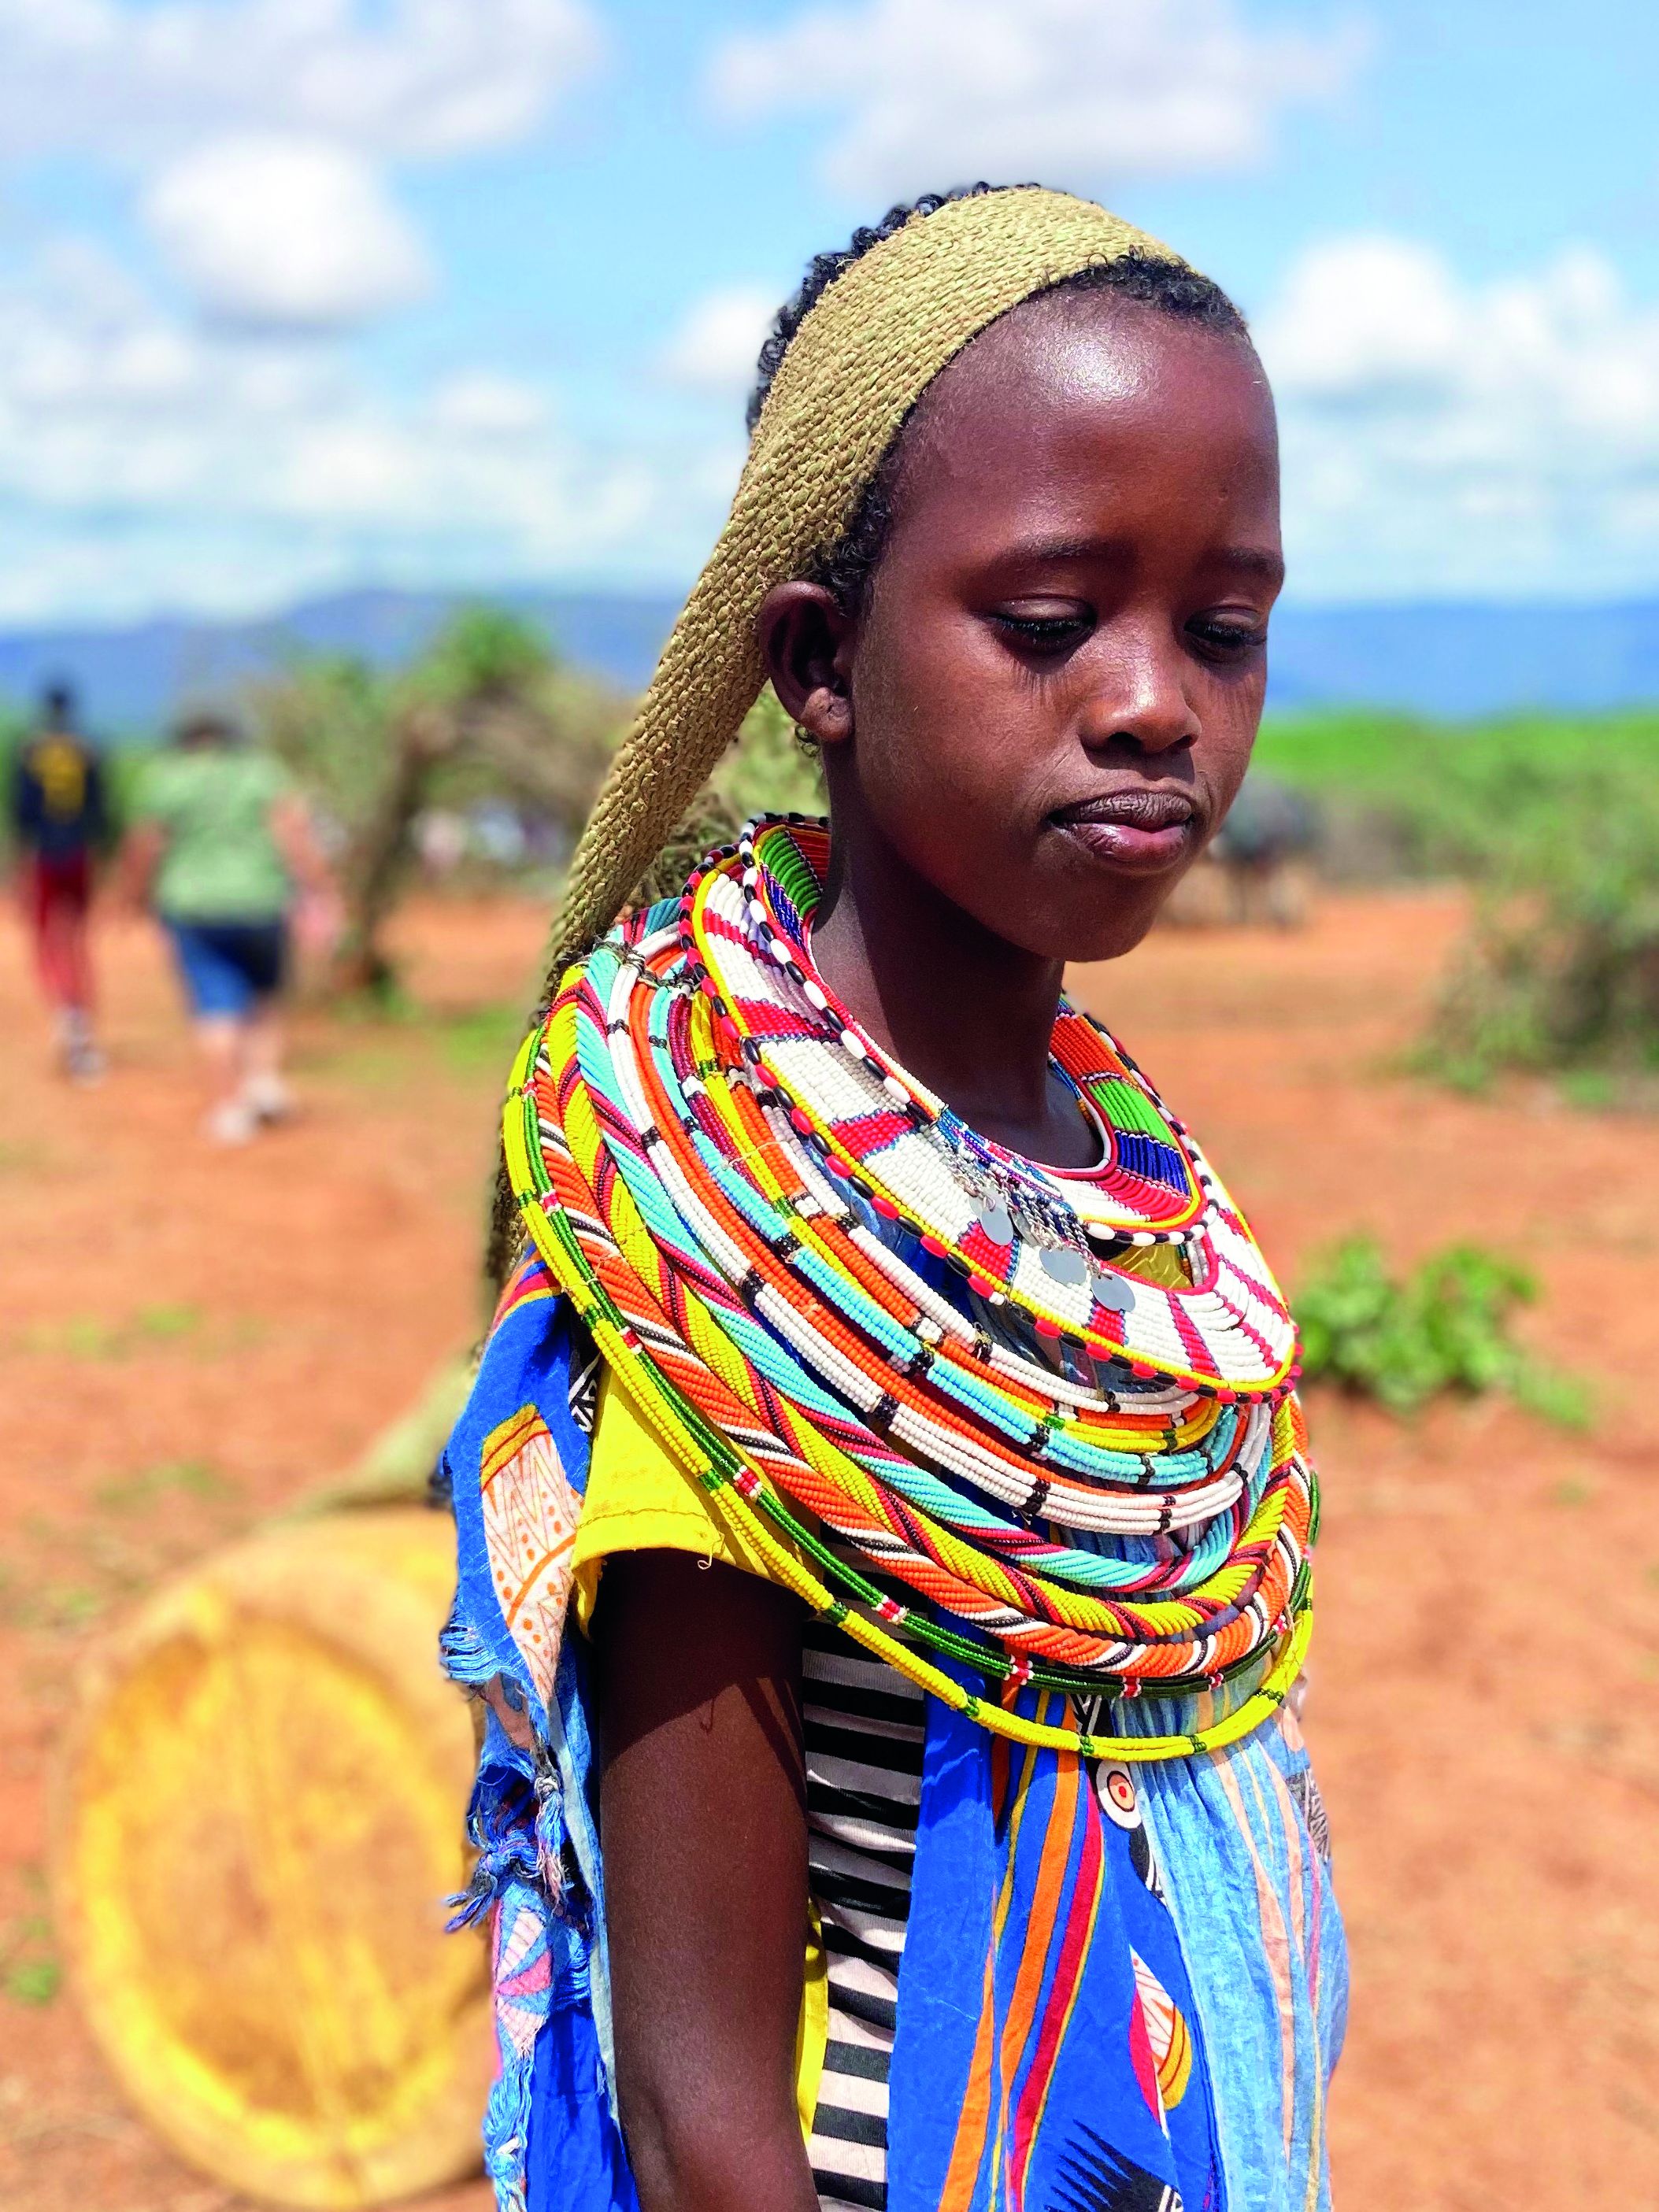 Mädchen auch Kenia mit traditionellem Perlenschmuck trägt Kanister mit Wasser